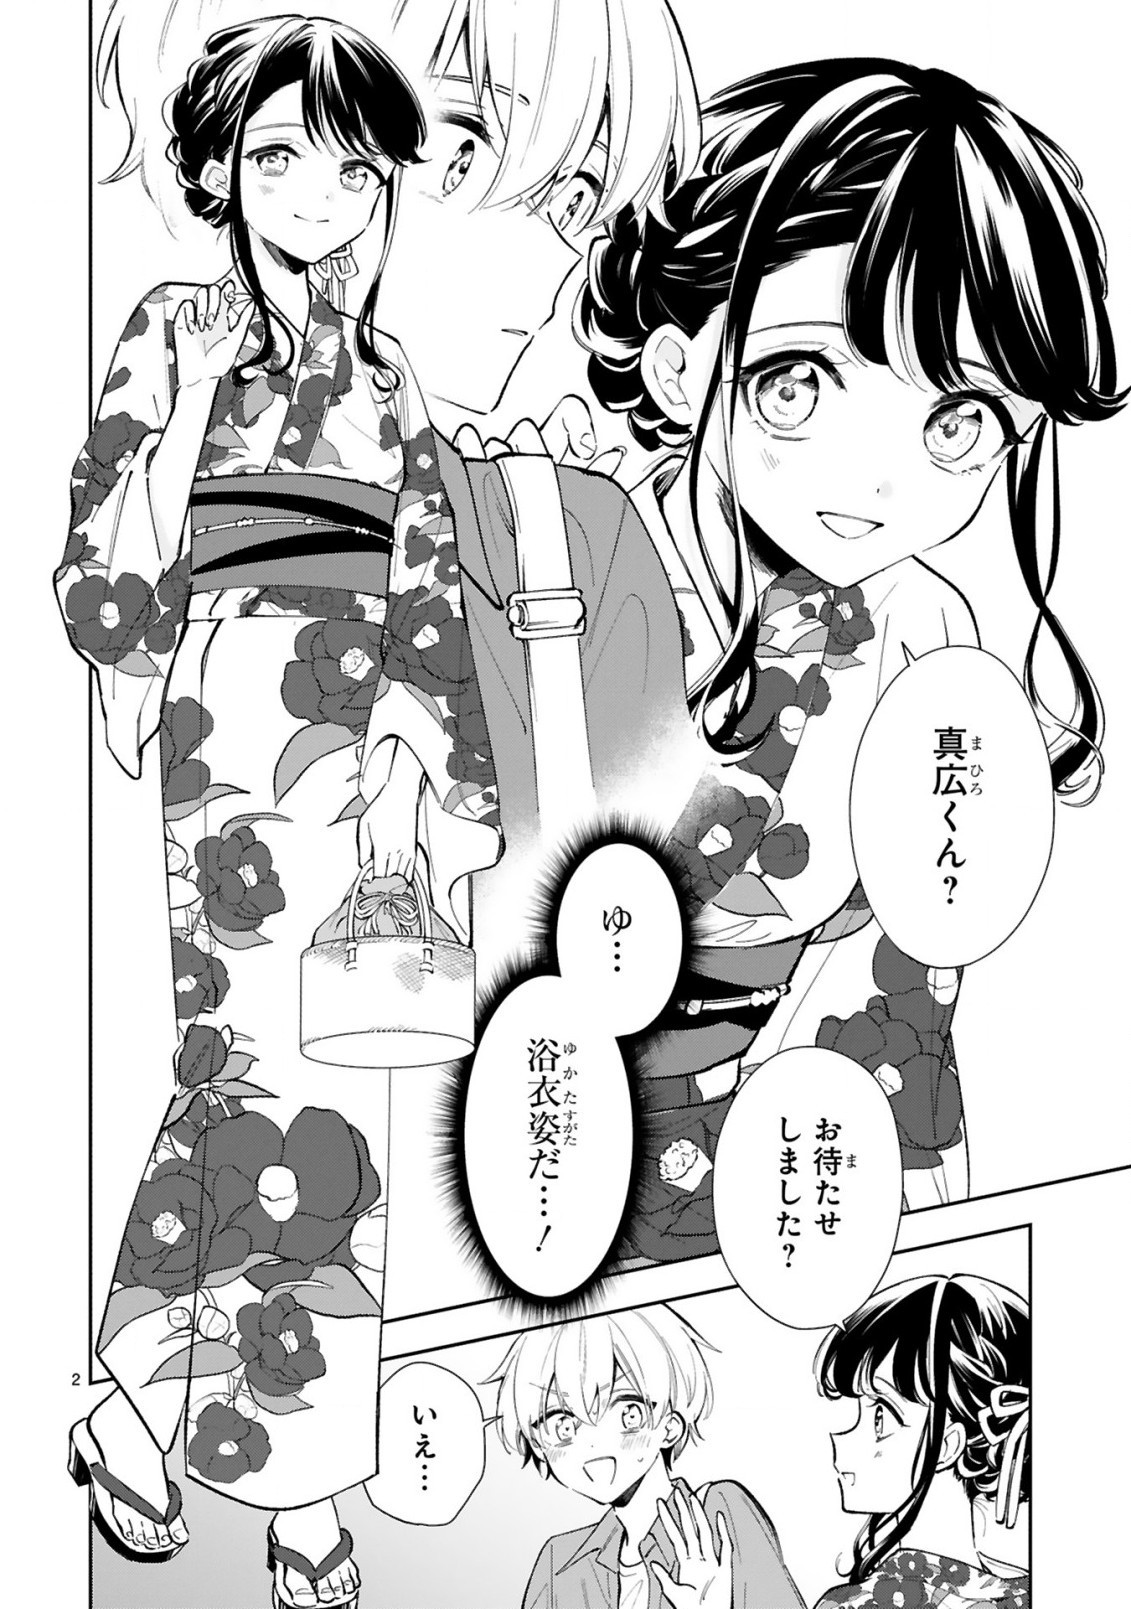 Ichijou-san wa Kao ni Deyasui - Chapter 15-1 - Page 2